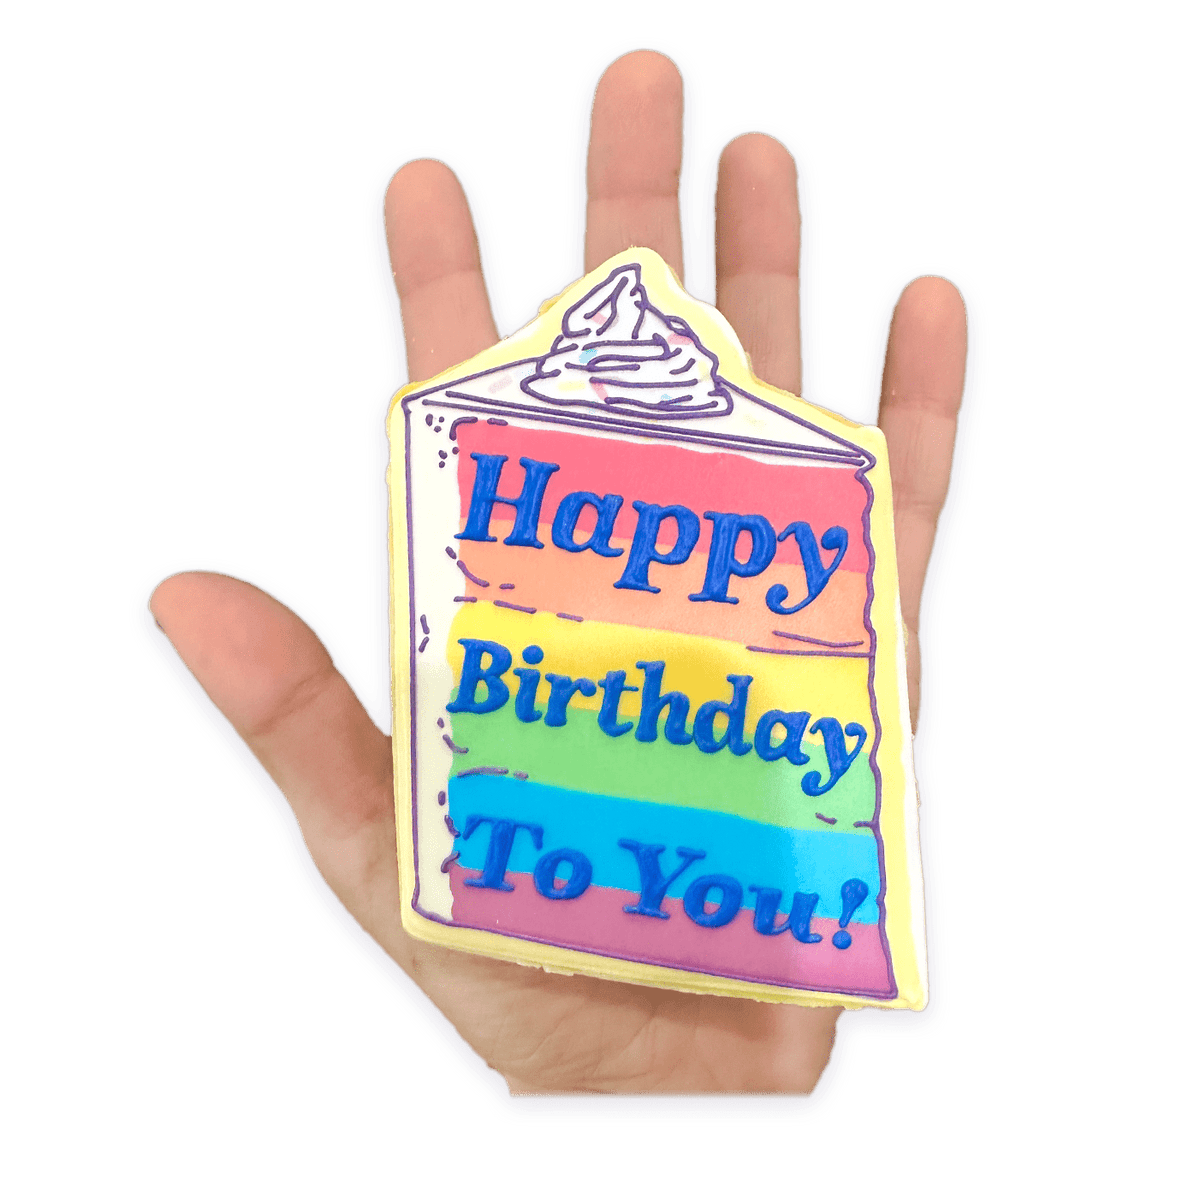 Happy Birthday To You! - Funny Face Bakery